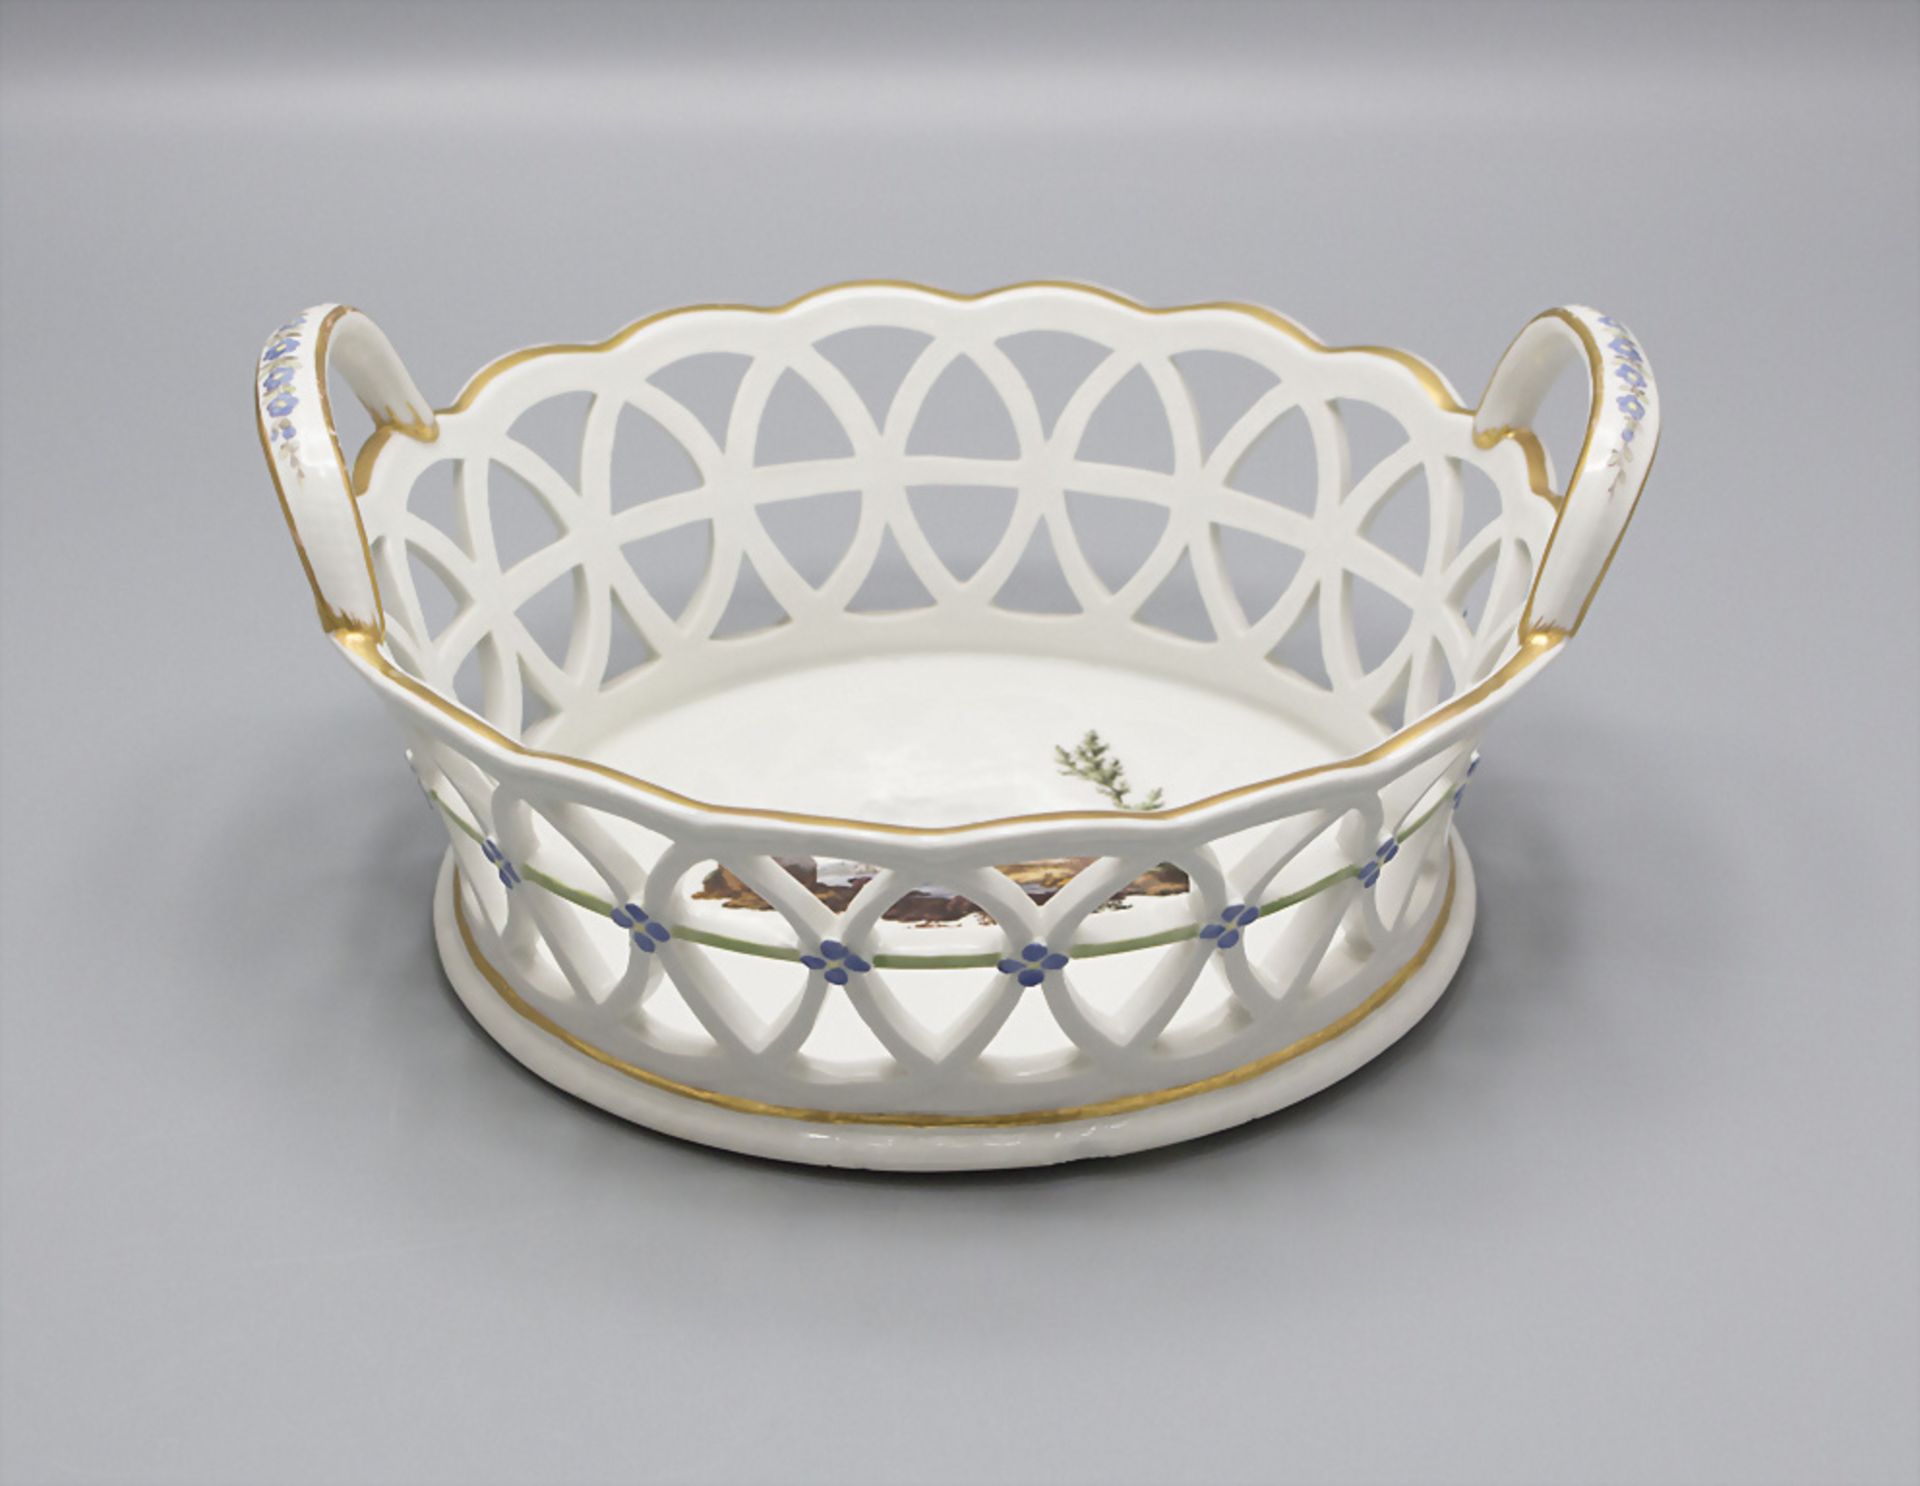 Porzellankorb / A porcelain basket, Fürstenberg, 18. Jh. - Bild 2 aus 4